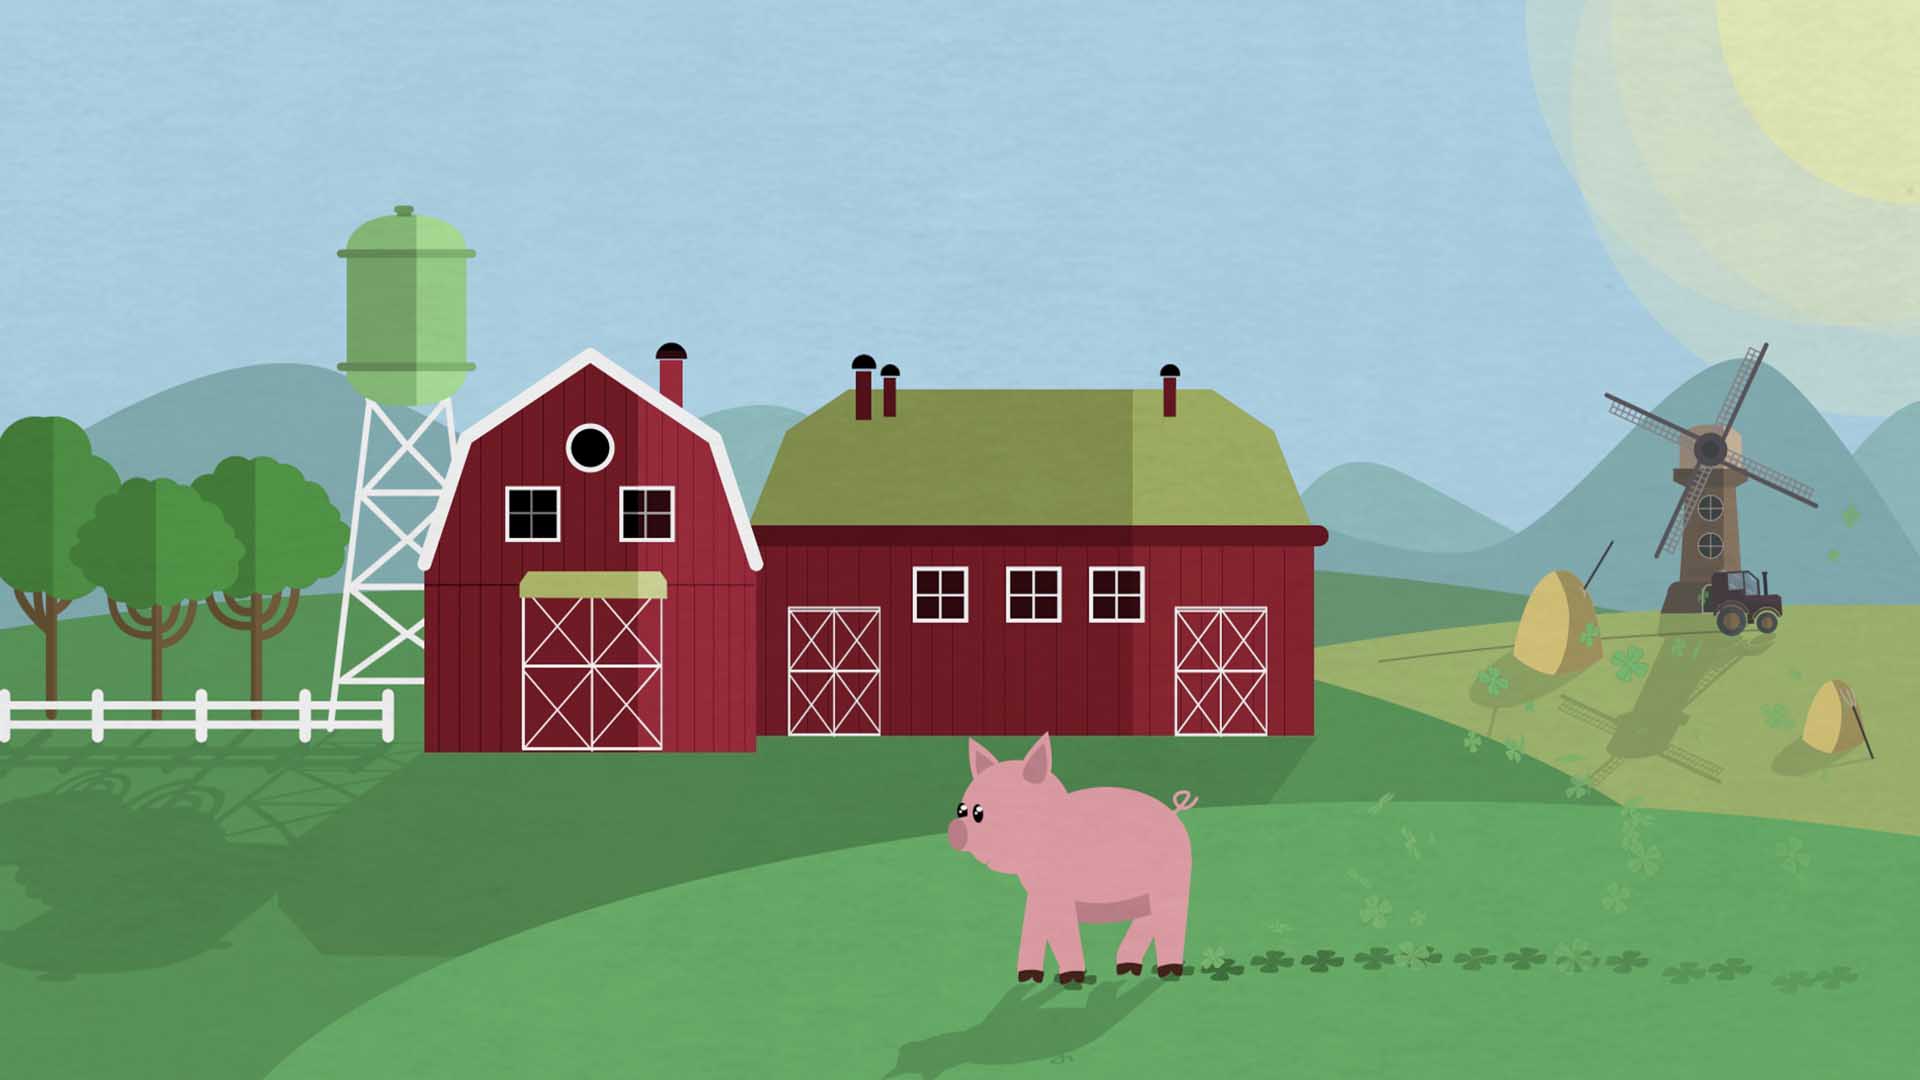 Das Bild zeigt eine Wiese. Auf dieser Wiese steht ein rotes Bauernhaus. Vor dem Bauernhaus läuft ein kleines Schwein. Es hinterlässt Fußspuren in Form eines Kleeblatts. Rechts neben dem Bauernhof steht eine Mühle. In der rechten Ecke des Bildes schwebt die Sonne. Links neben dem Bauernhof sieht man Bäume. Das Bild dient als Sliderbild für den Portfolioeintrag "Region Passau Comics Mitmachstation" von Panda Pictures.